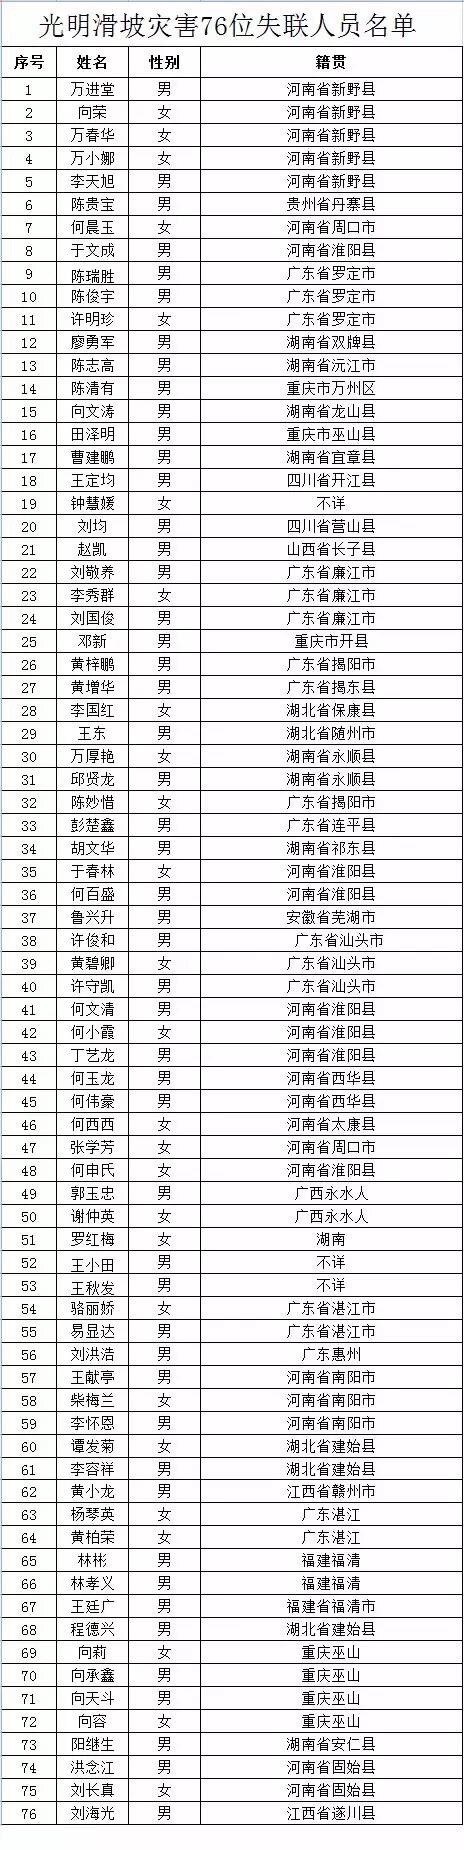 深圳公布山体滑坡失联名单 76人中73人身份已核实